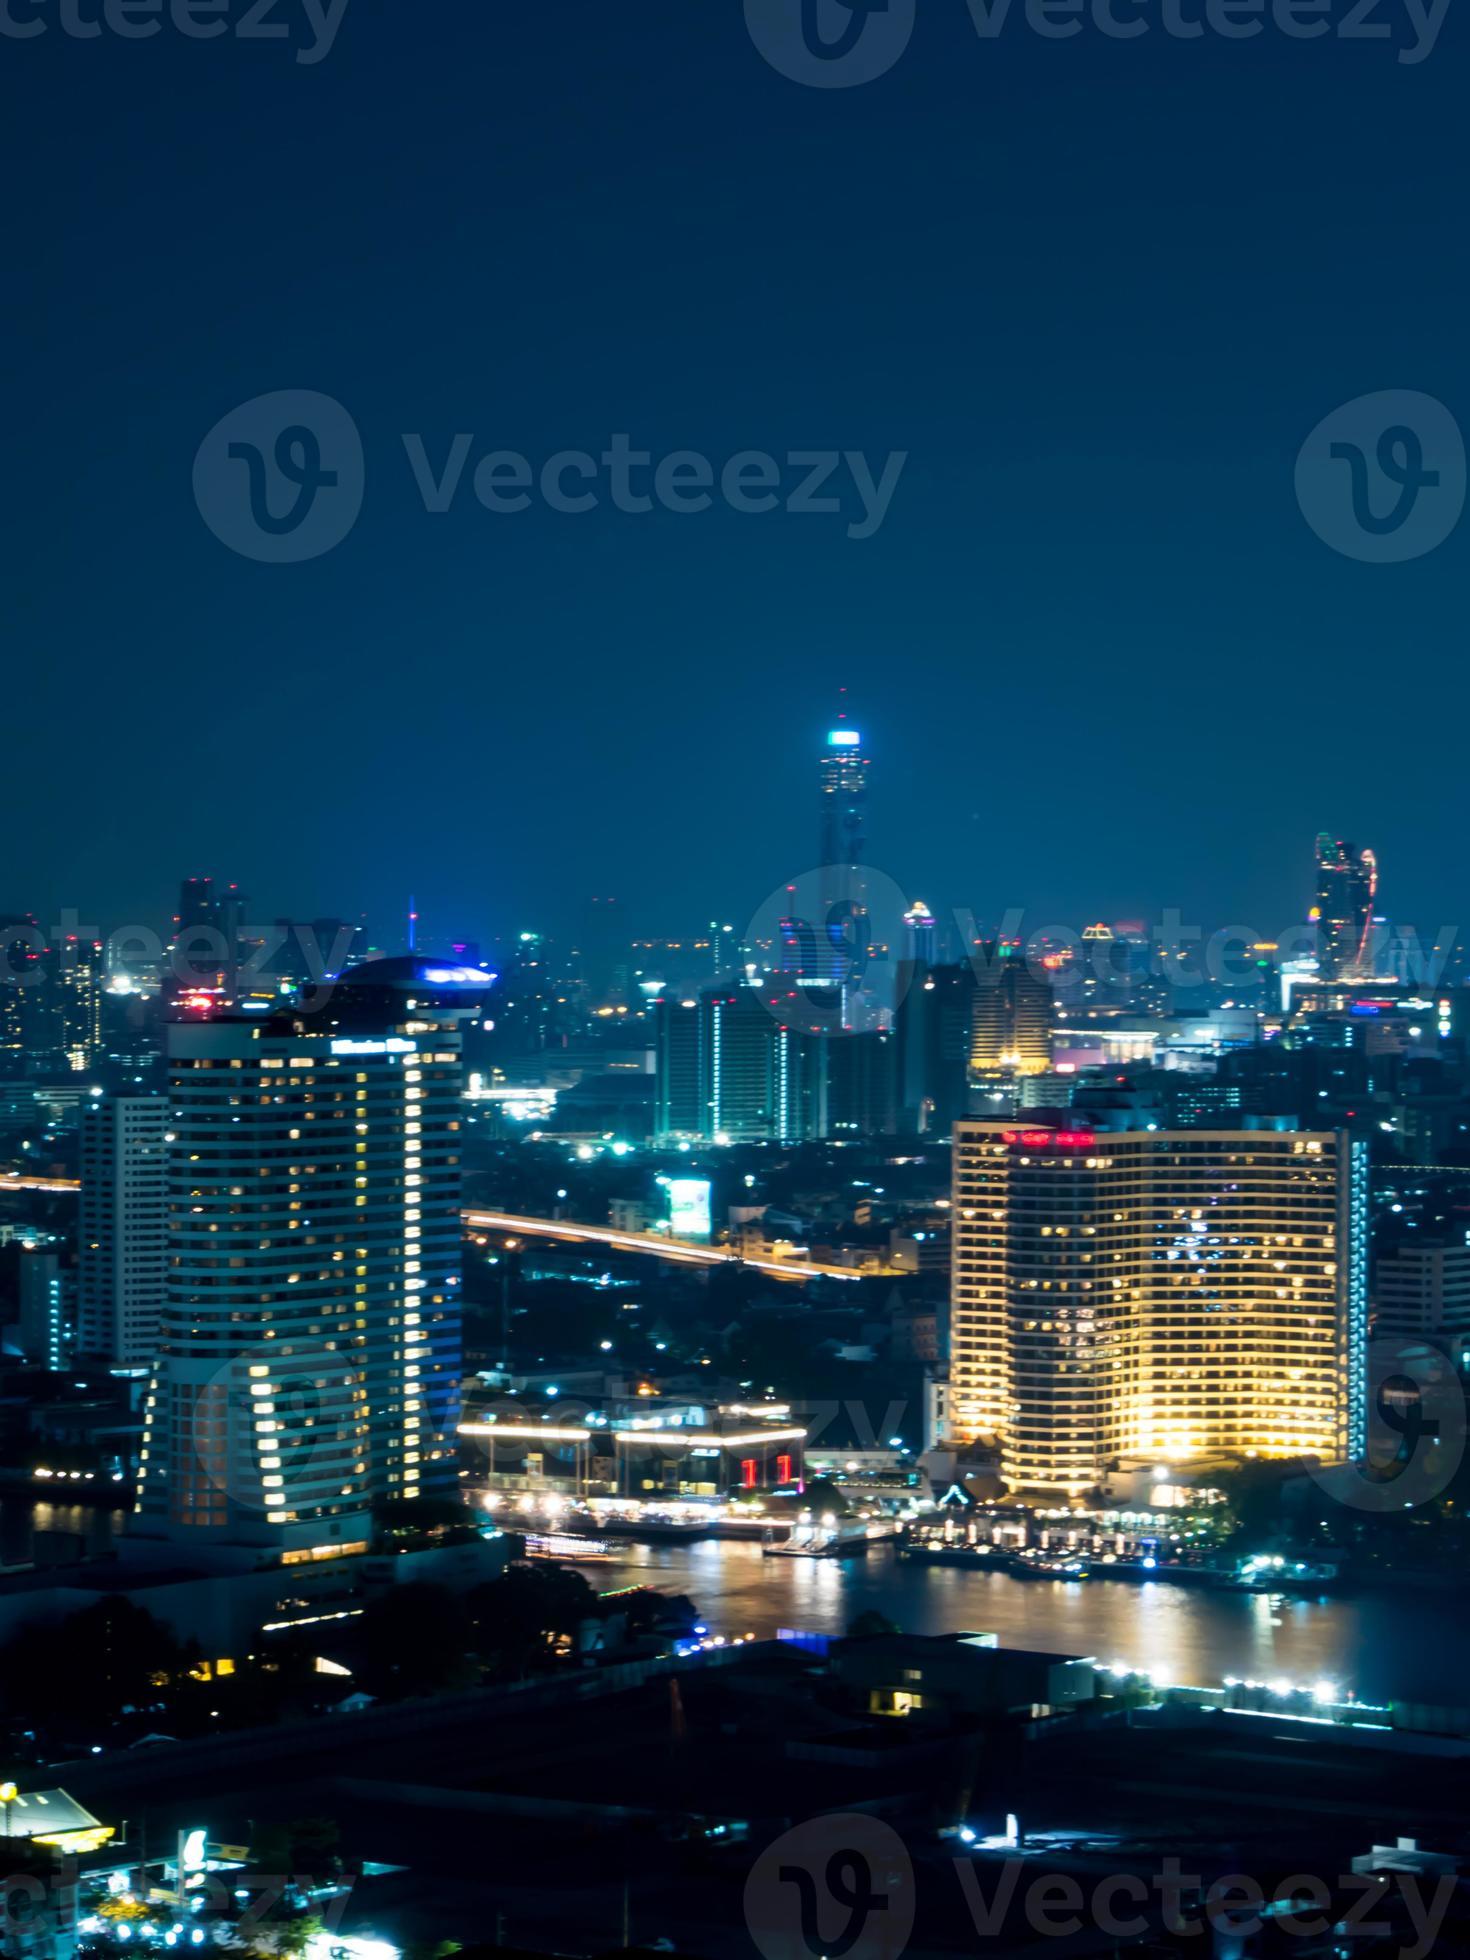 paysage urbain de bangkok vue de nuit dans le quartier des affaires photo